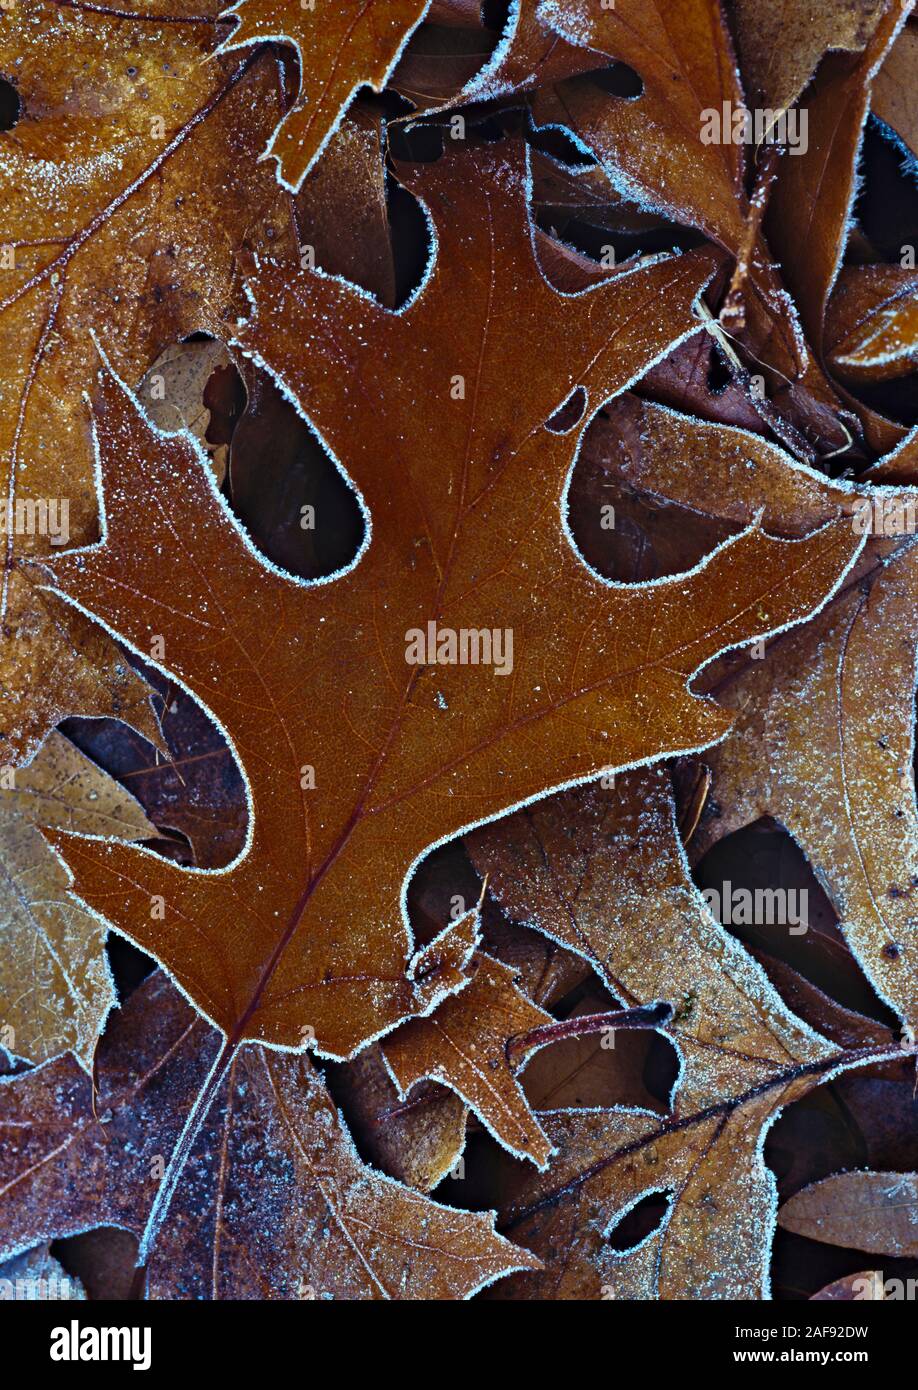 Die kalte Herbstluft gebildet Frost auf den Waldboden und entlang des Umfangs dieser magischen scarlet Eichenlaub von Arten Quercus coccinea Stockfoto